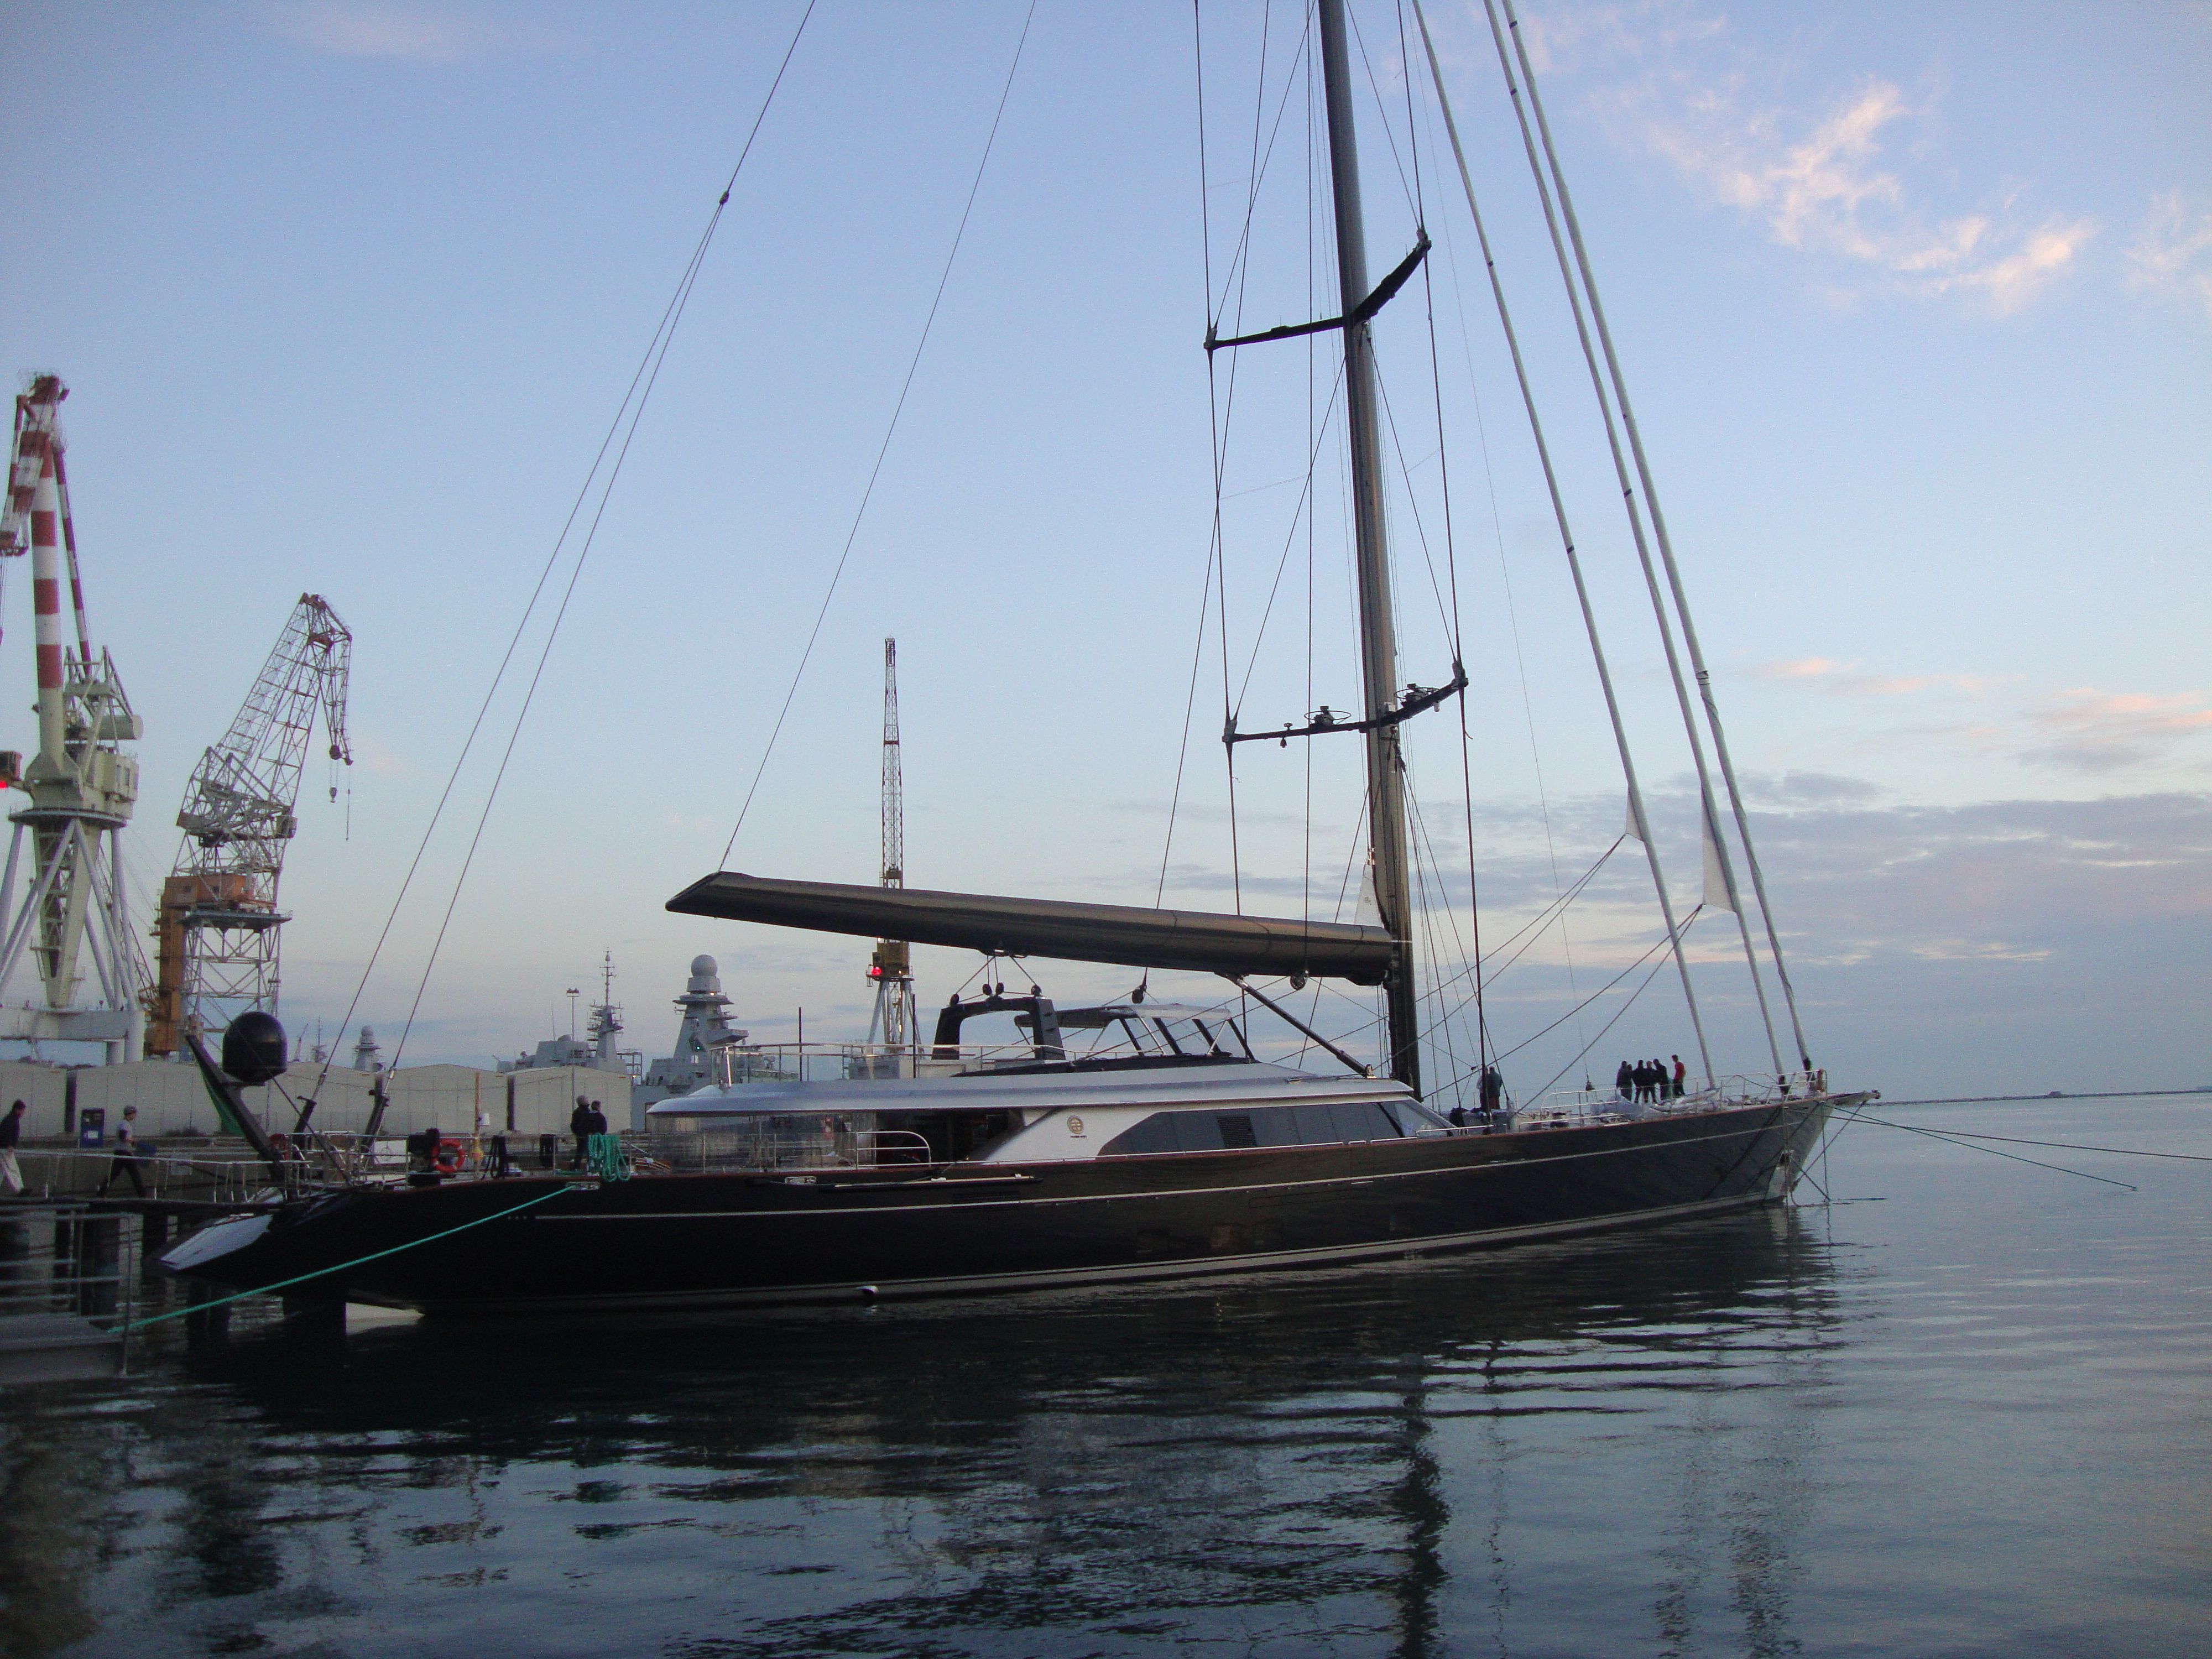 Sailing Yacht Perseus^3 at dock